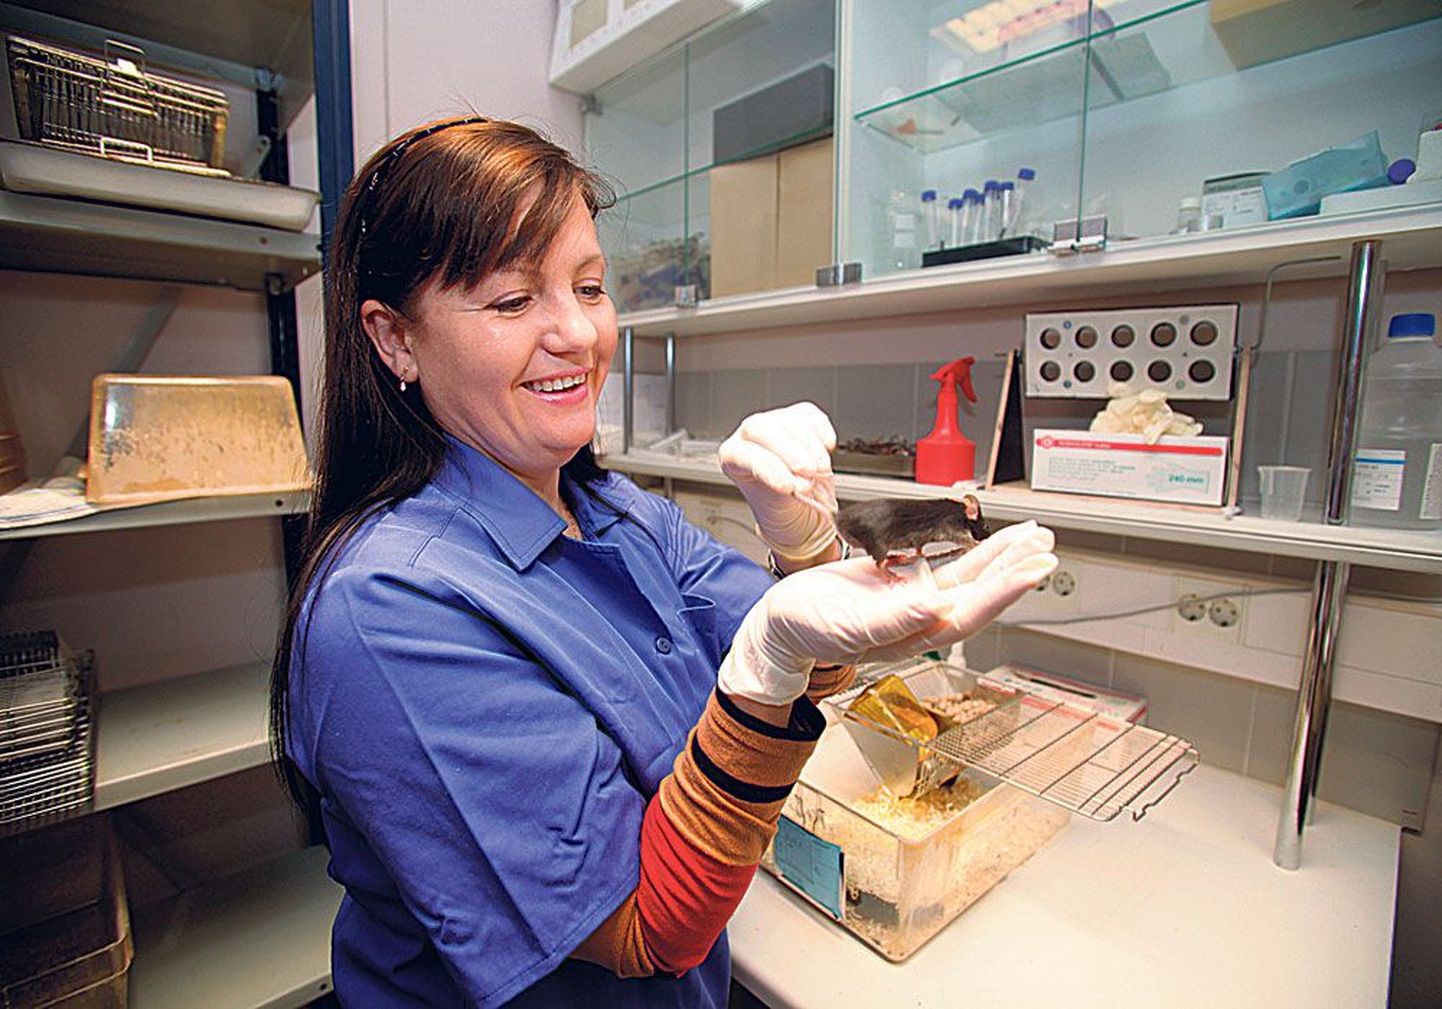 Моника Юргенсон из института фармакологии ТУ часами наблюдала за поведением подопытных мышей.